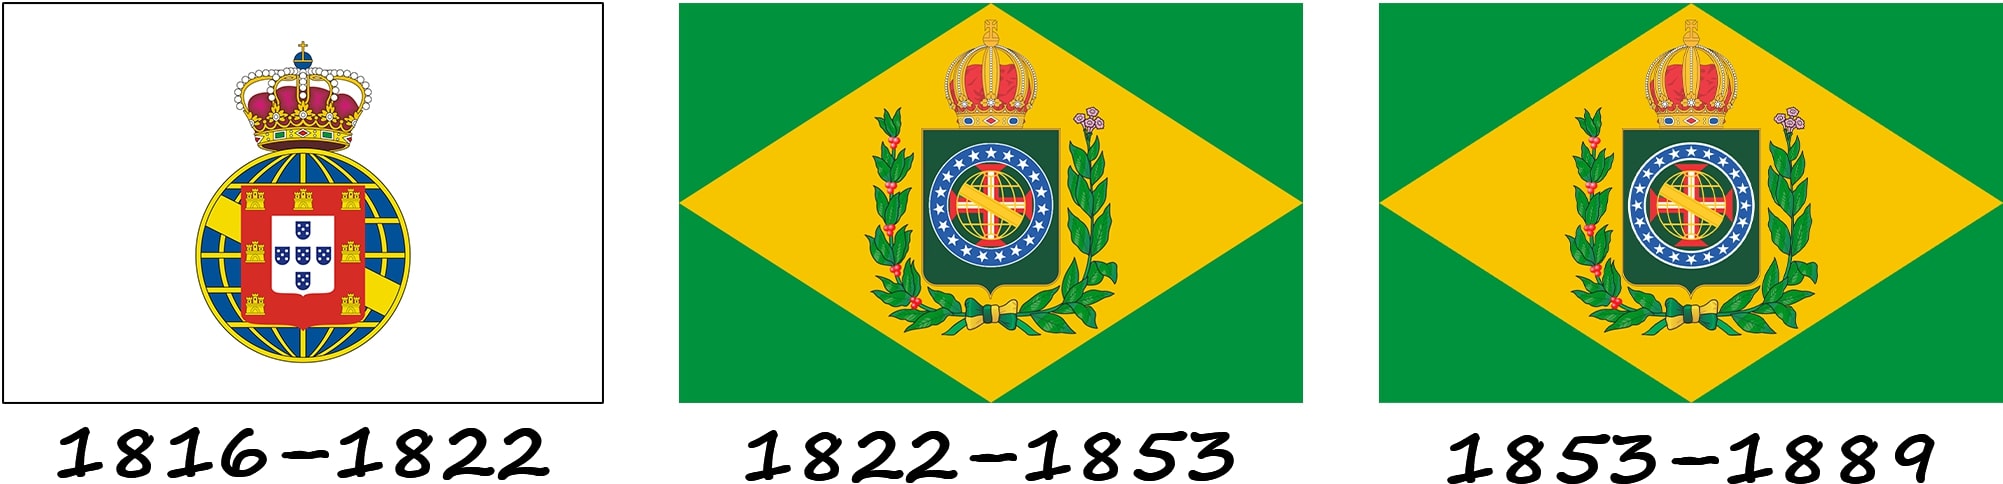 Історія прапору до створення Республіки Бразилія